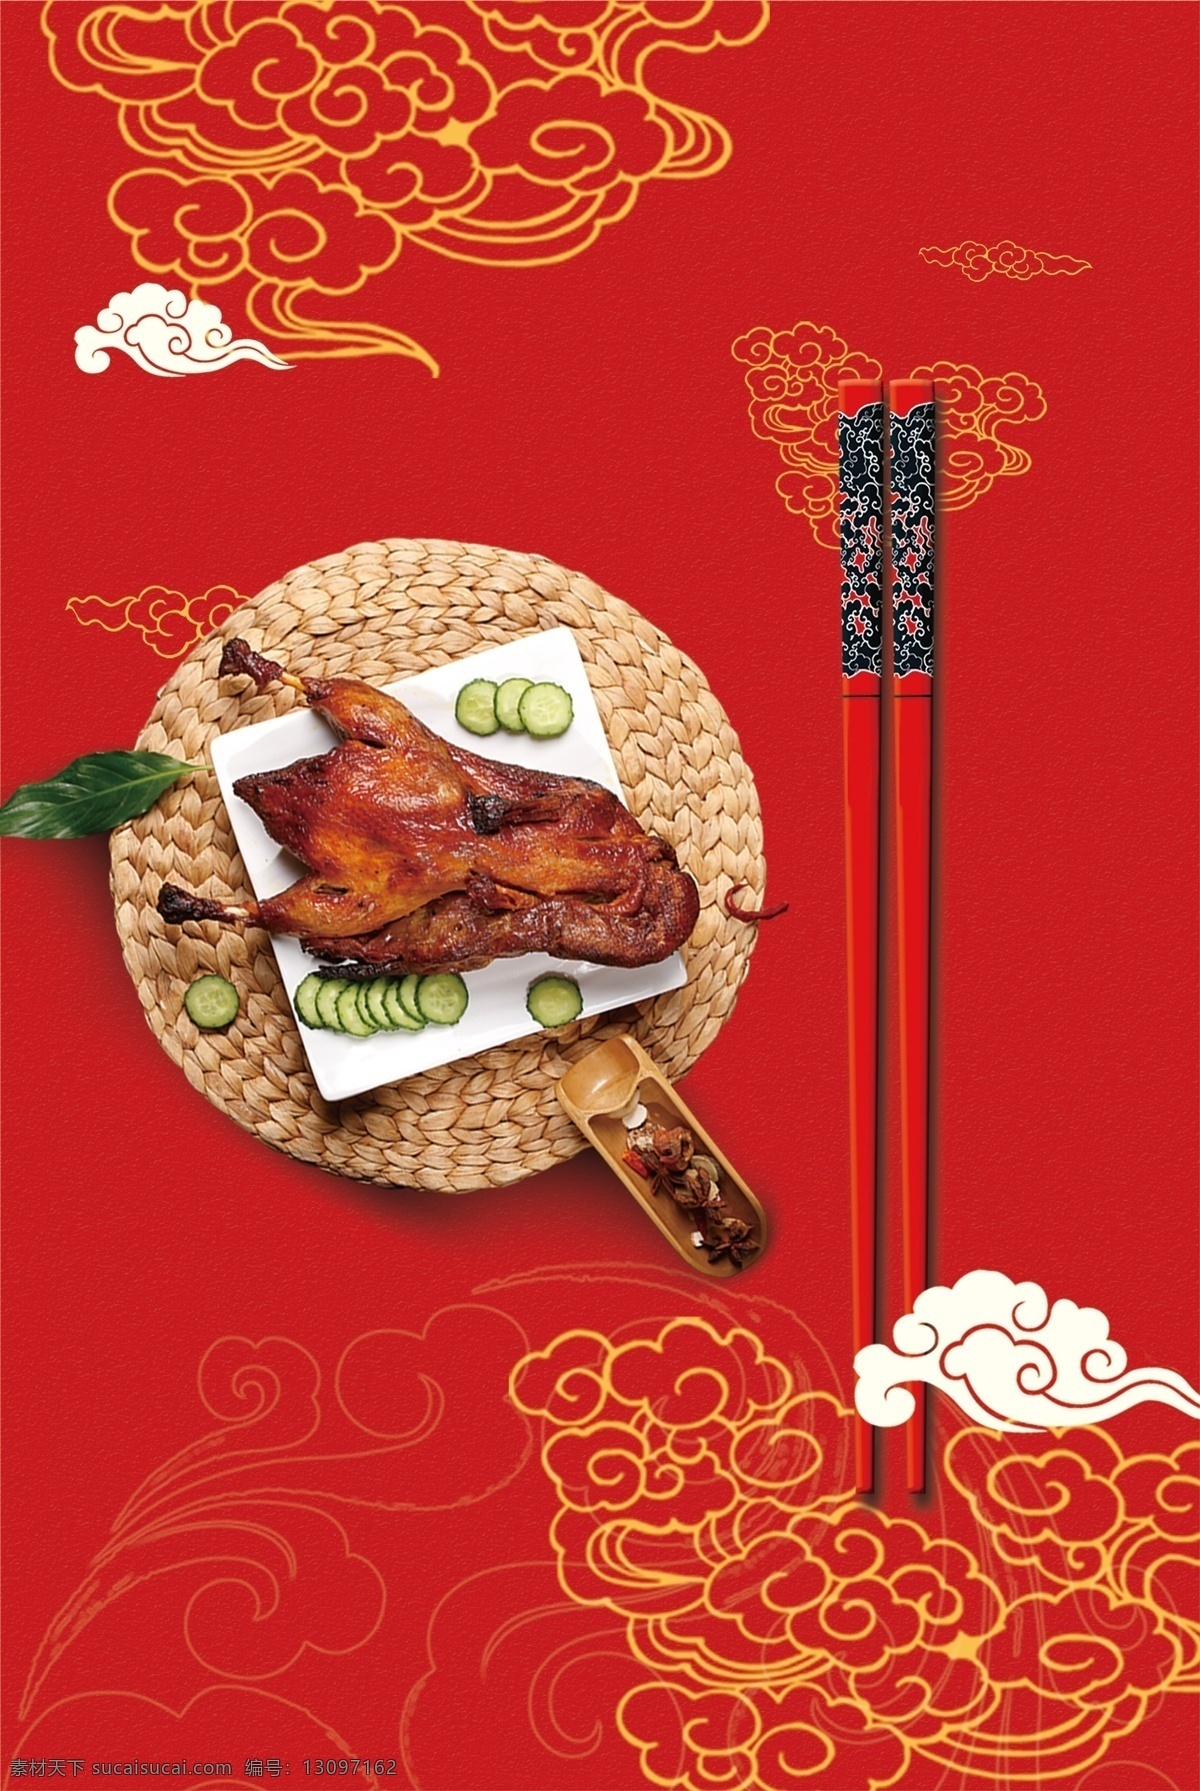 中国 传统文化 筷子 饮食文化 风 红色 背景 中国传统文化 中国风 复古 文艺 水墨风格 创意意境背景